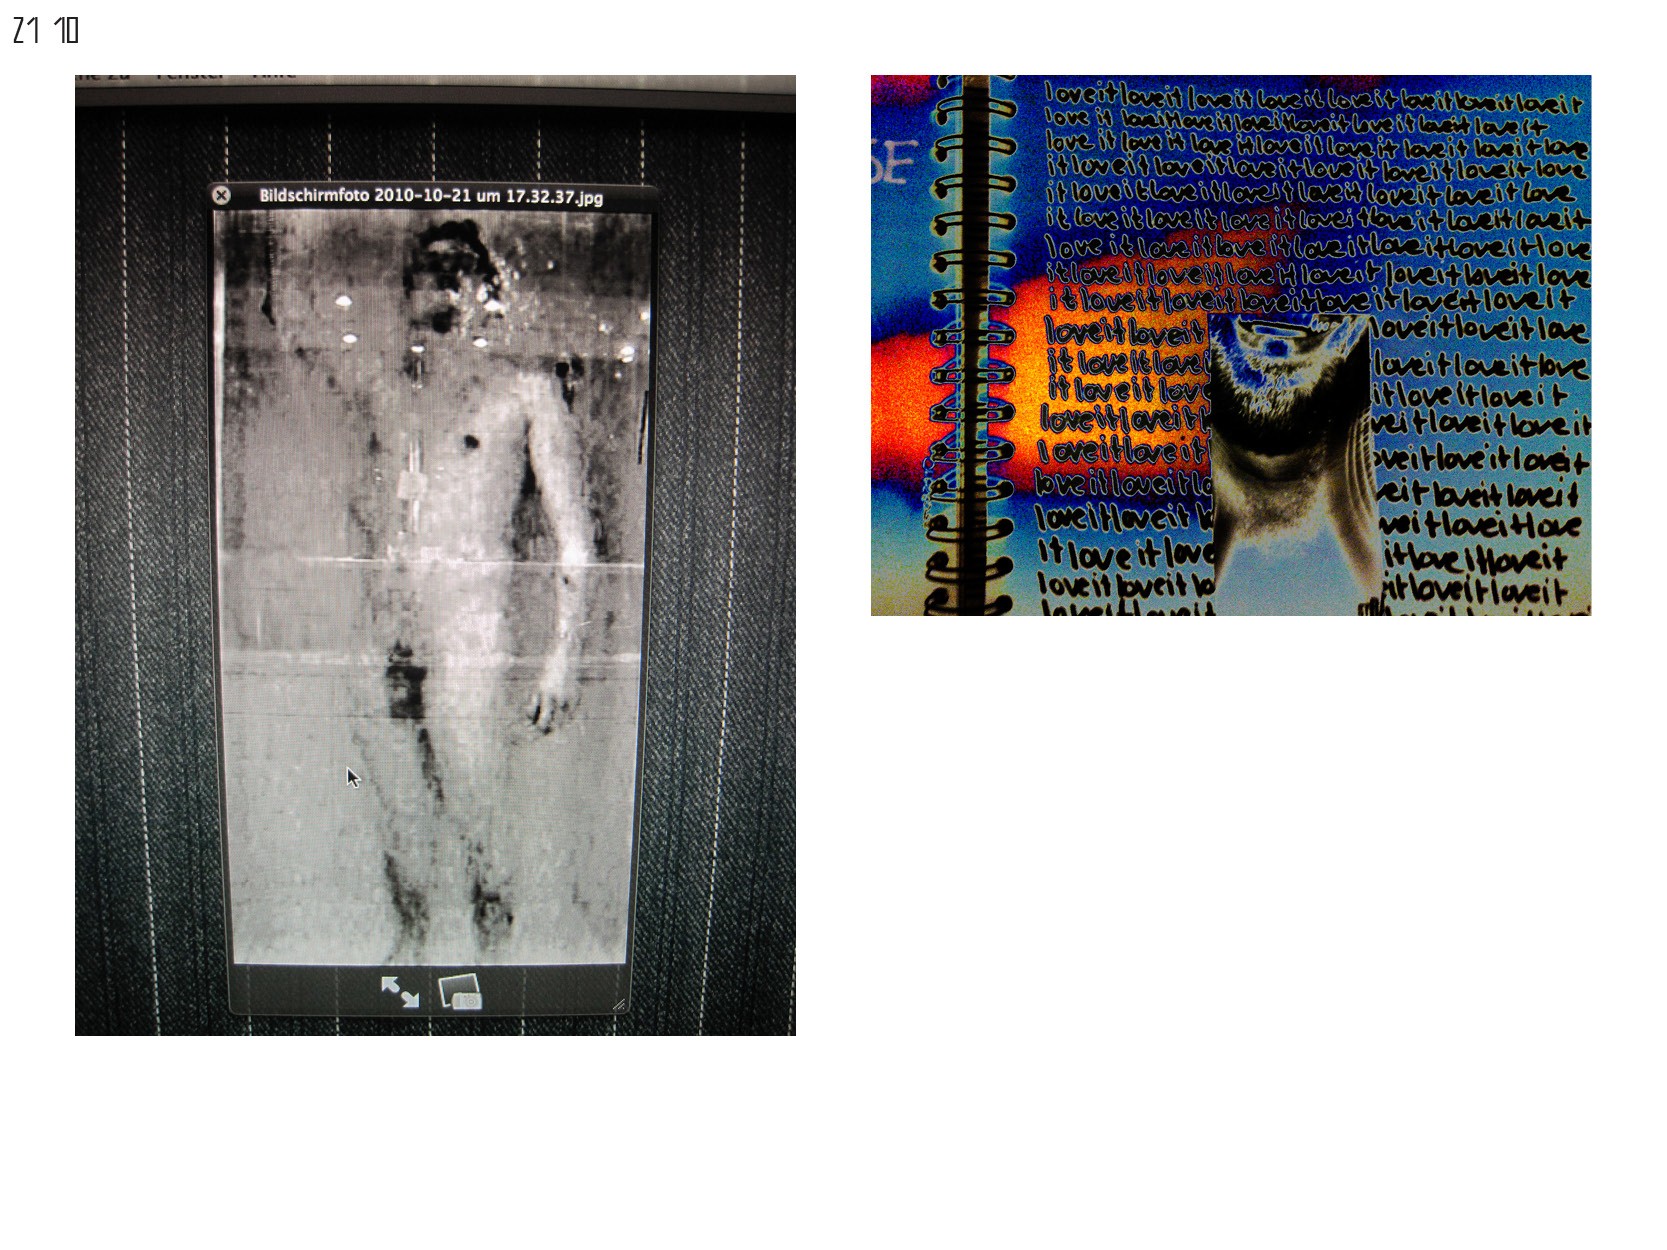 Gerrit-Schweiger-Dialog-Städte-Paris-Berlin-Jessica-Blank-Experiment-Fotoserie-Tagebuch-visuelle-Kommunikation-6